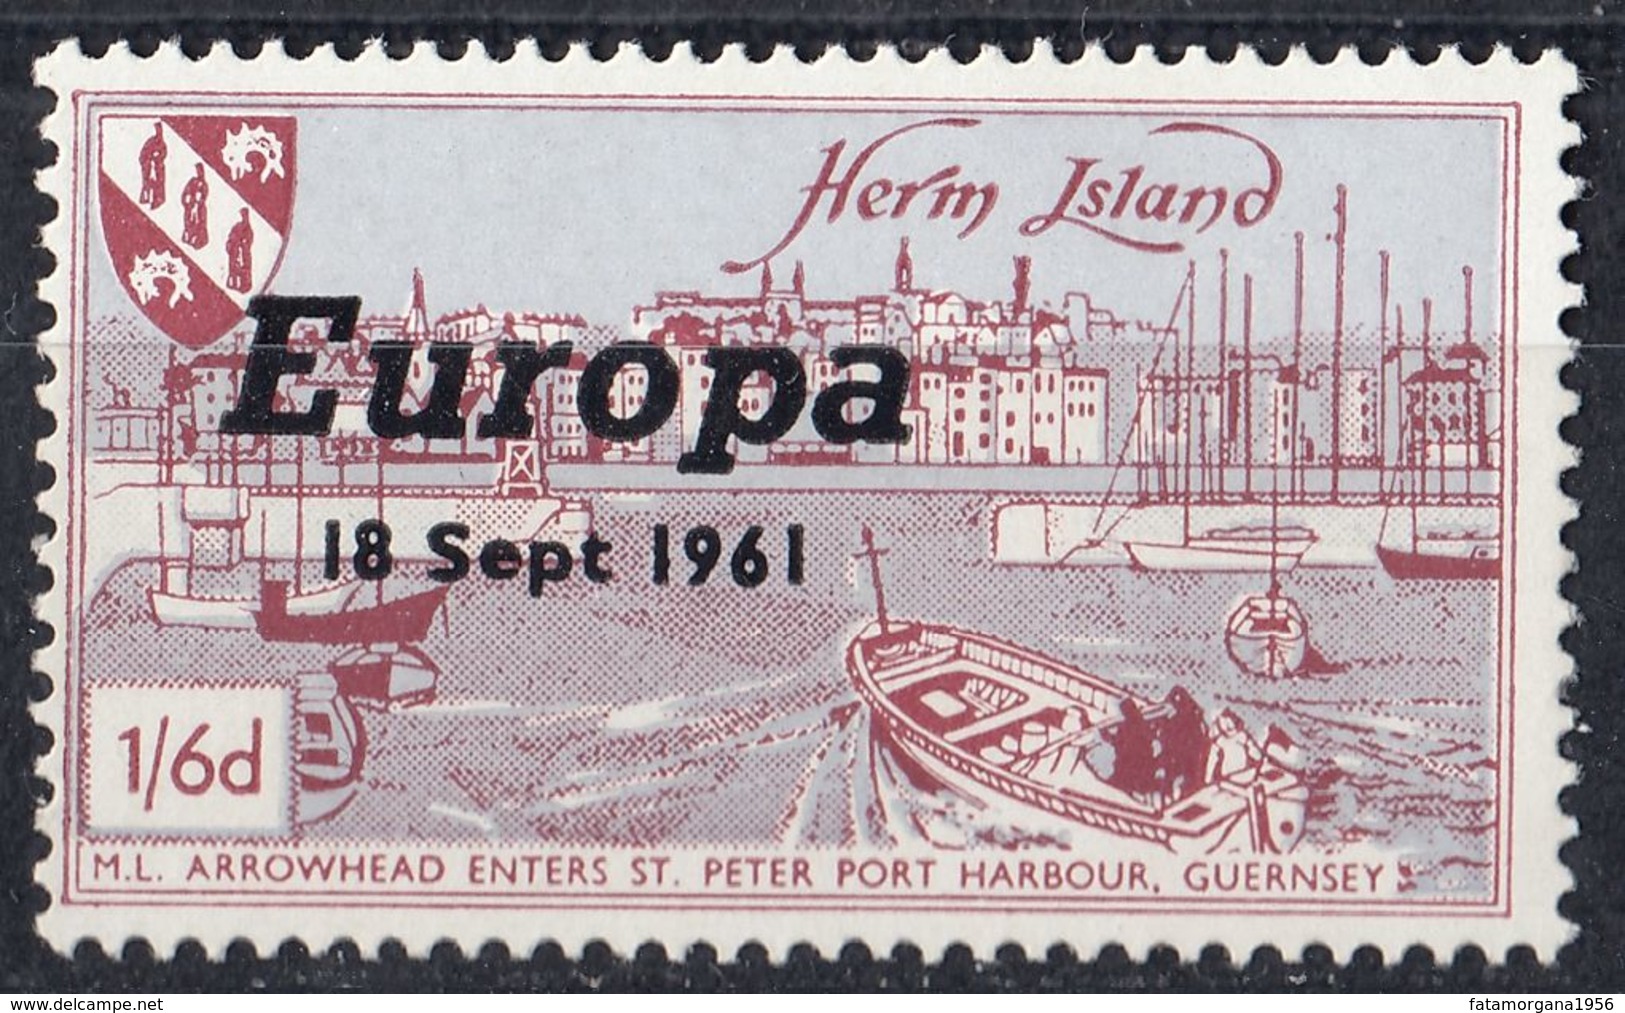 HERM ISLAND - 1961 - Un Francobollo Nuovo MNH, Come Da Immagine. - Local Issues